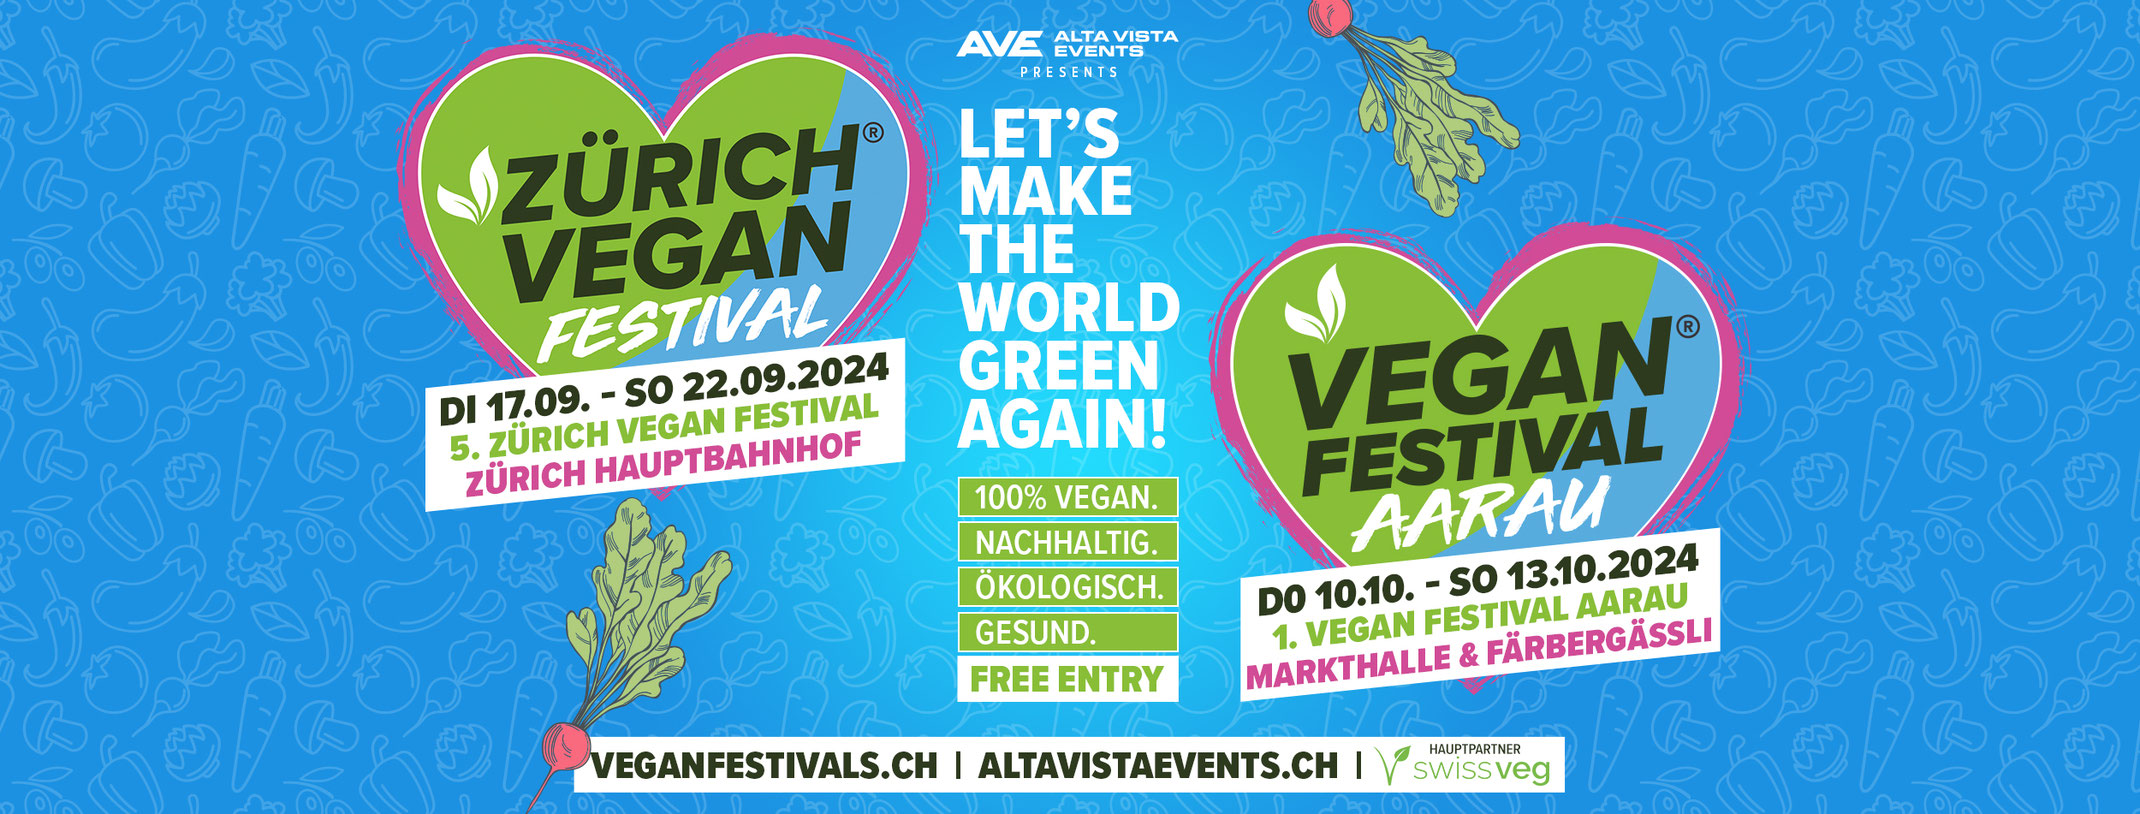 (c) Veganfestivals.ch